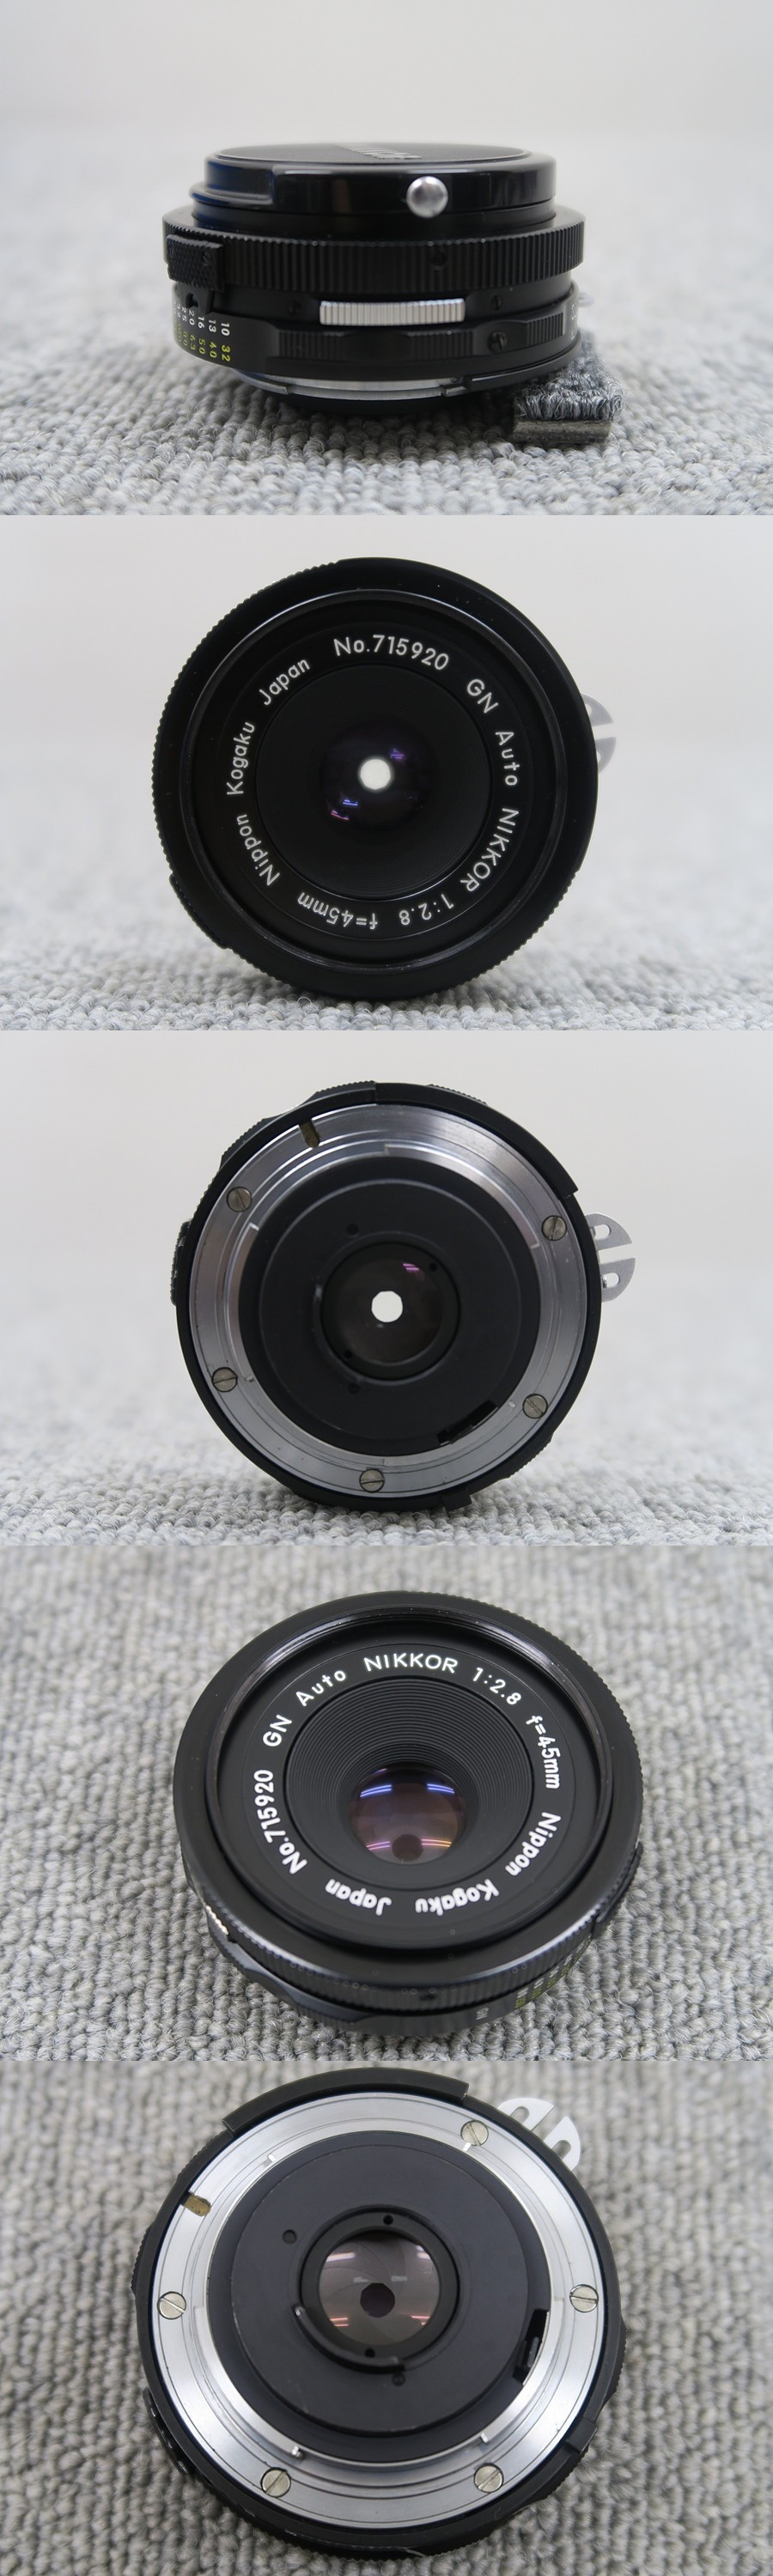 ニコン NIKON GN Auto Nikkor 45mm F2.8 カメラレンズ @47446 / 中古 